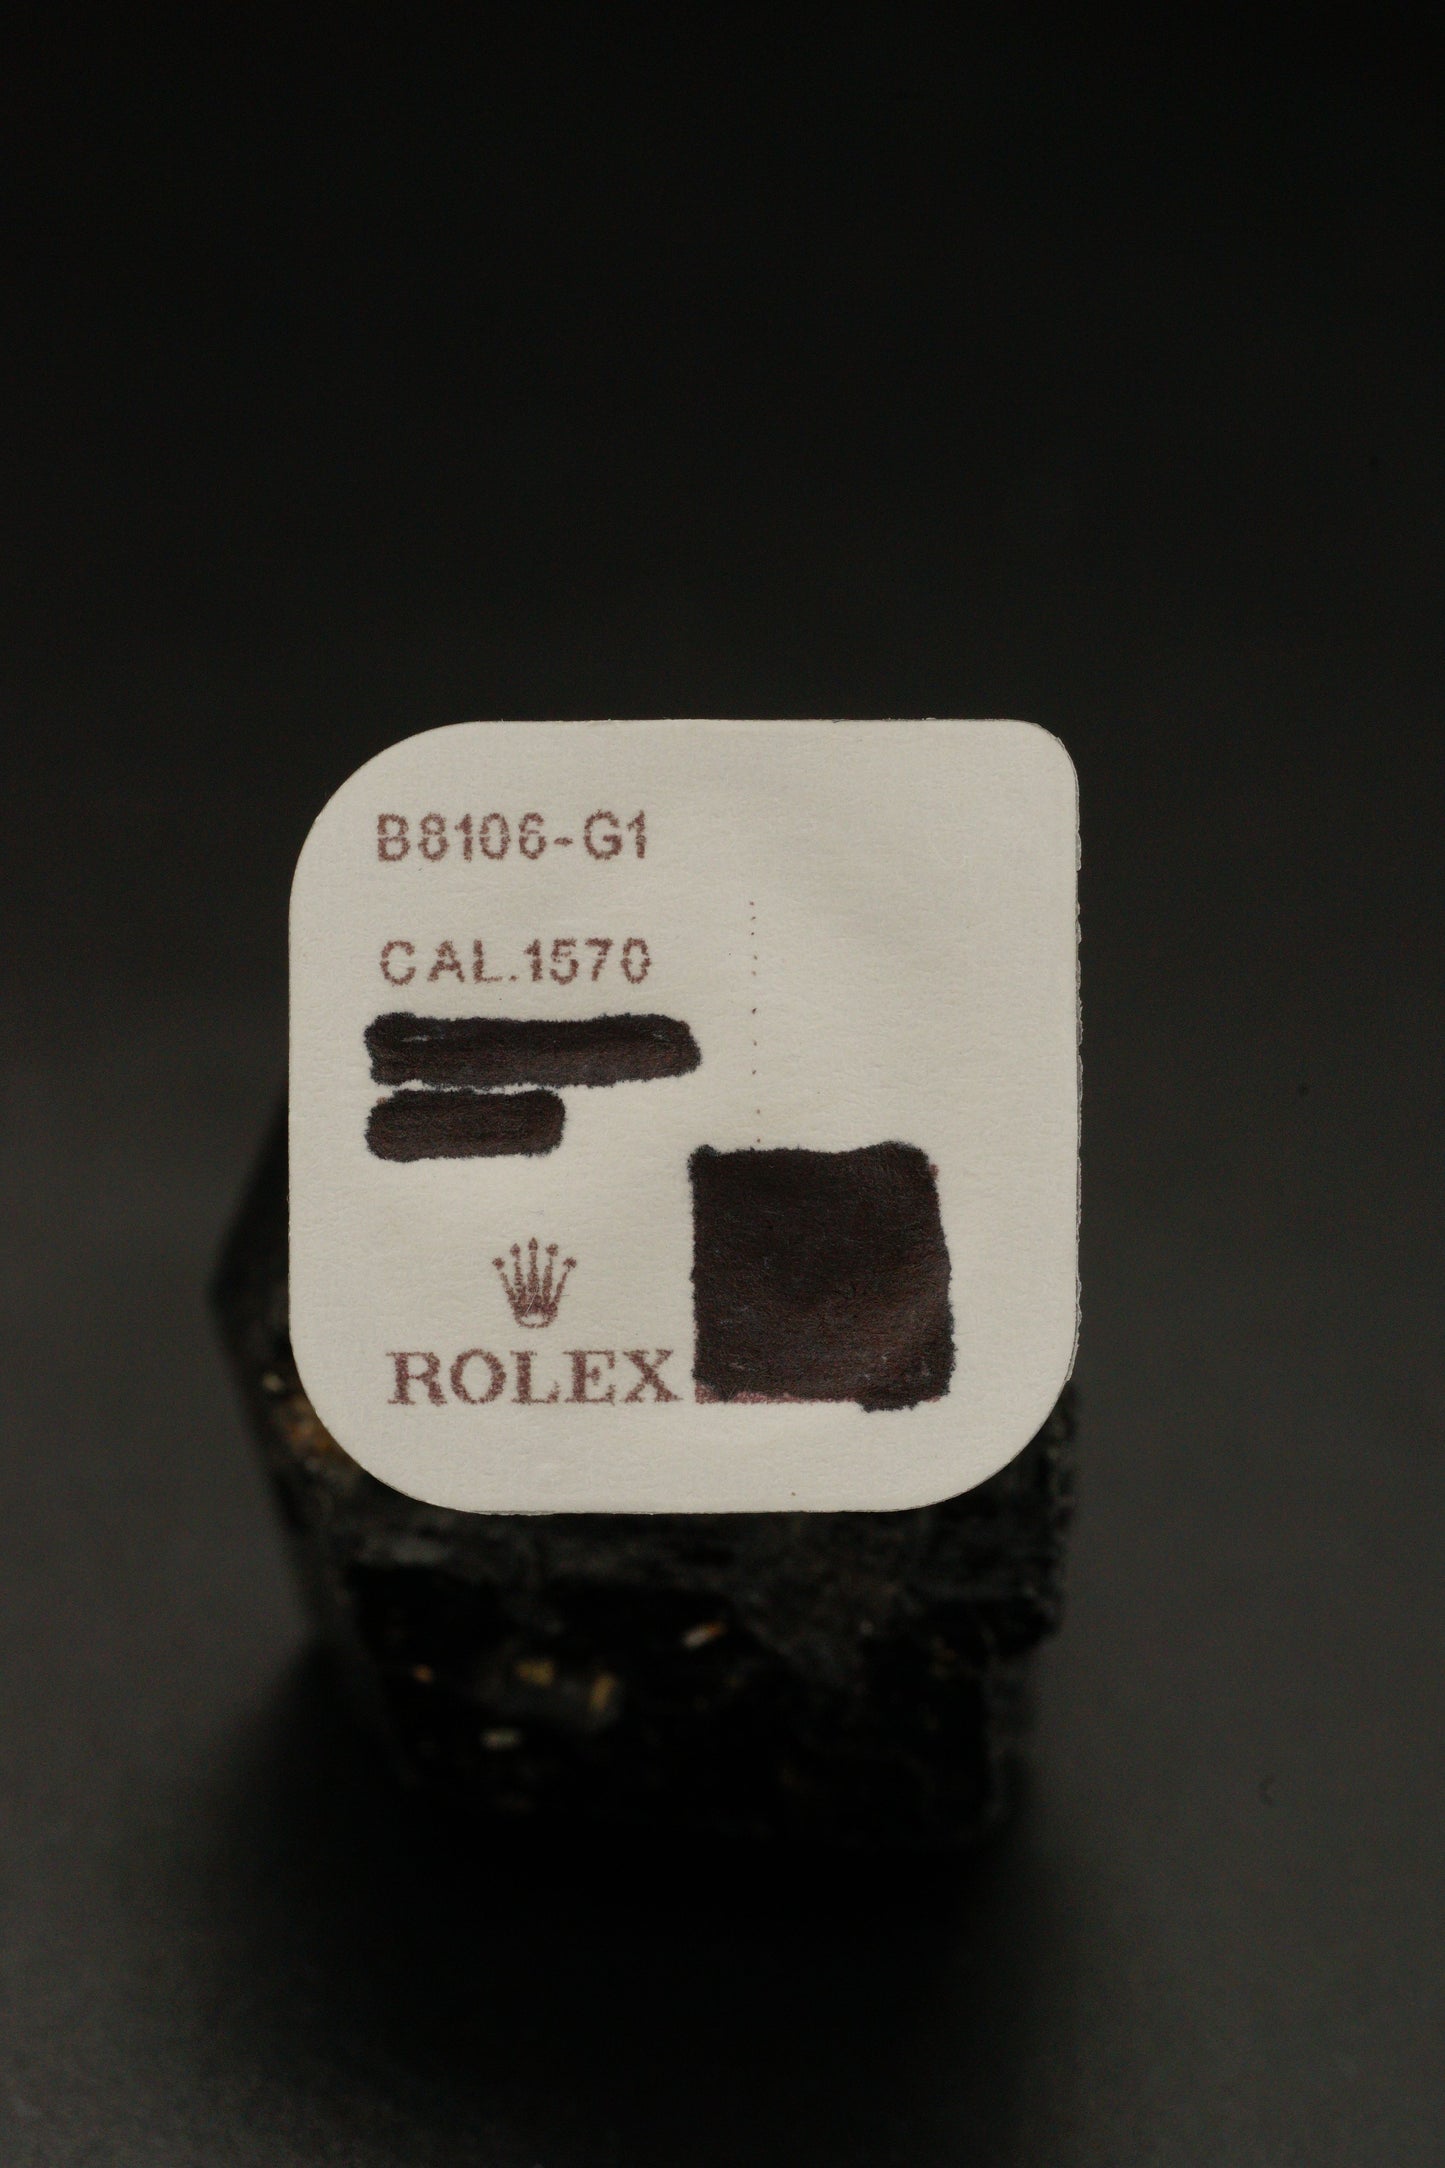 Rolex B8106-G1 Unruhe mit Breguet Spirale Reguliert für Cal.1570